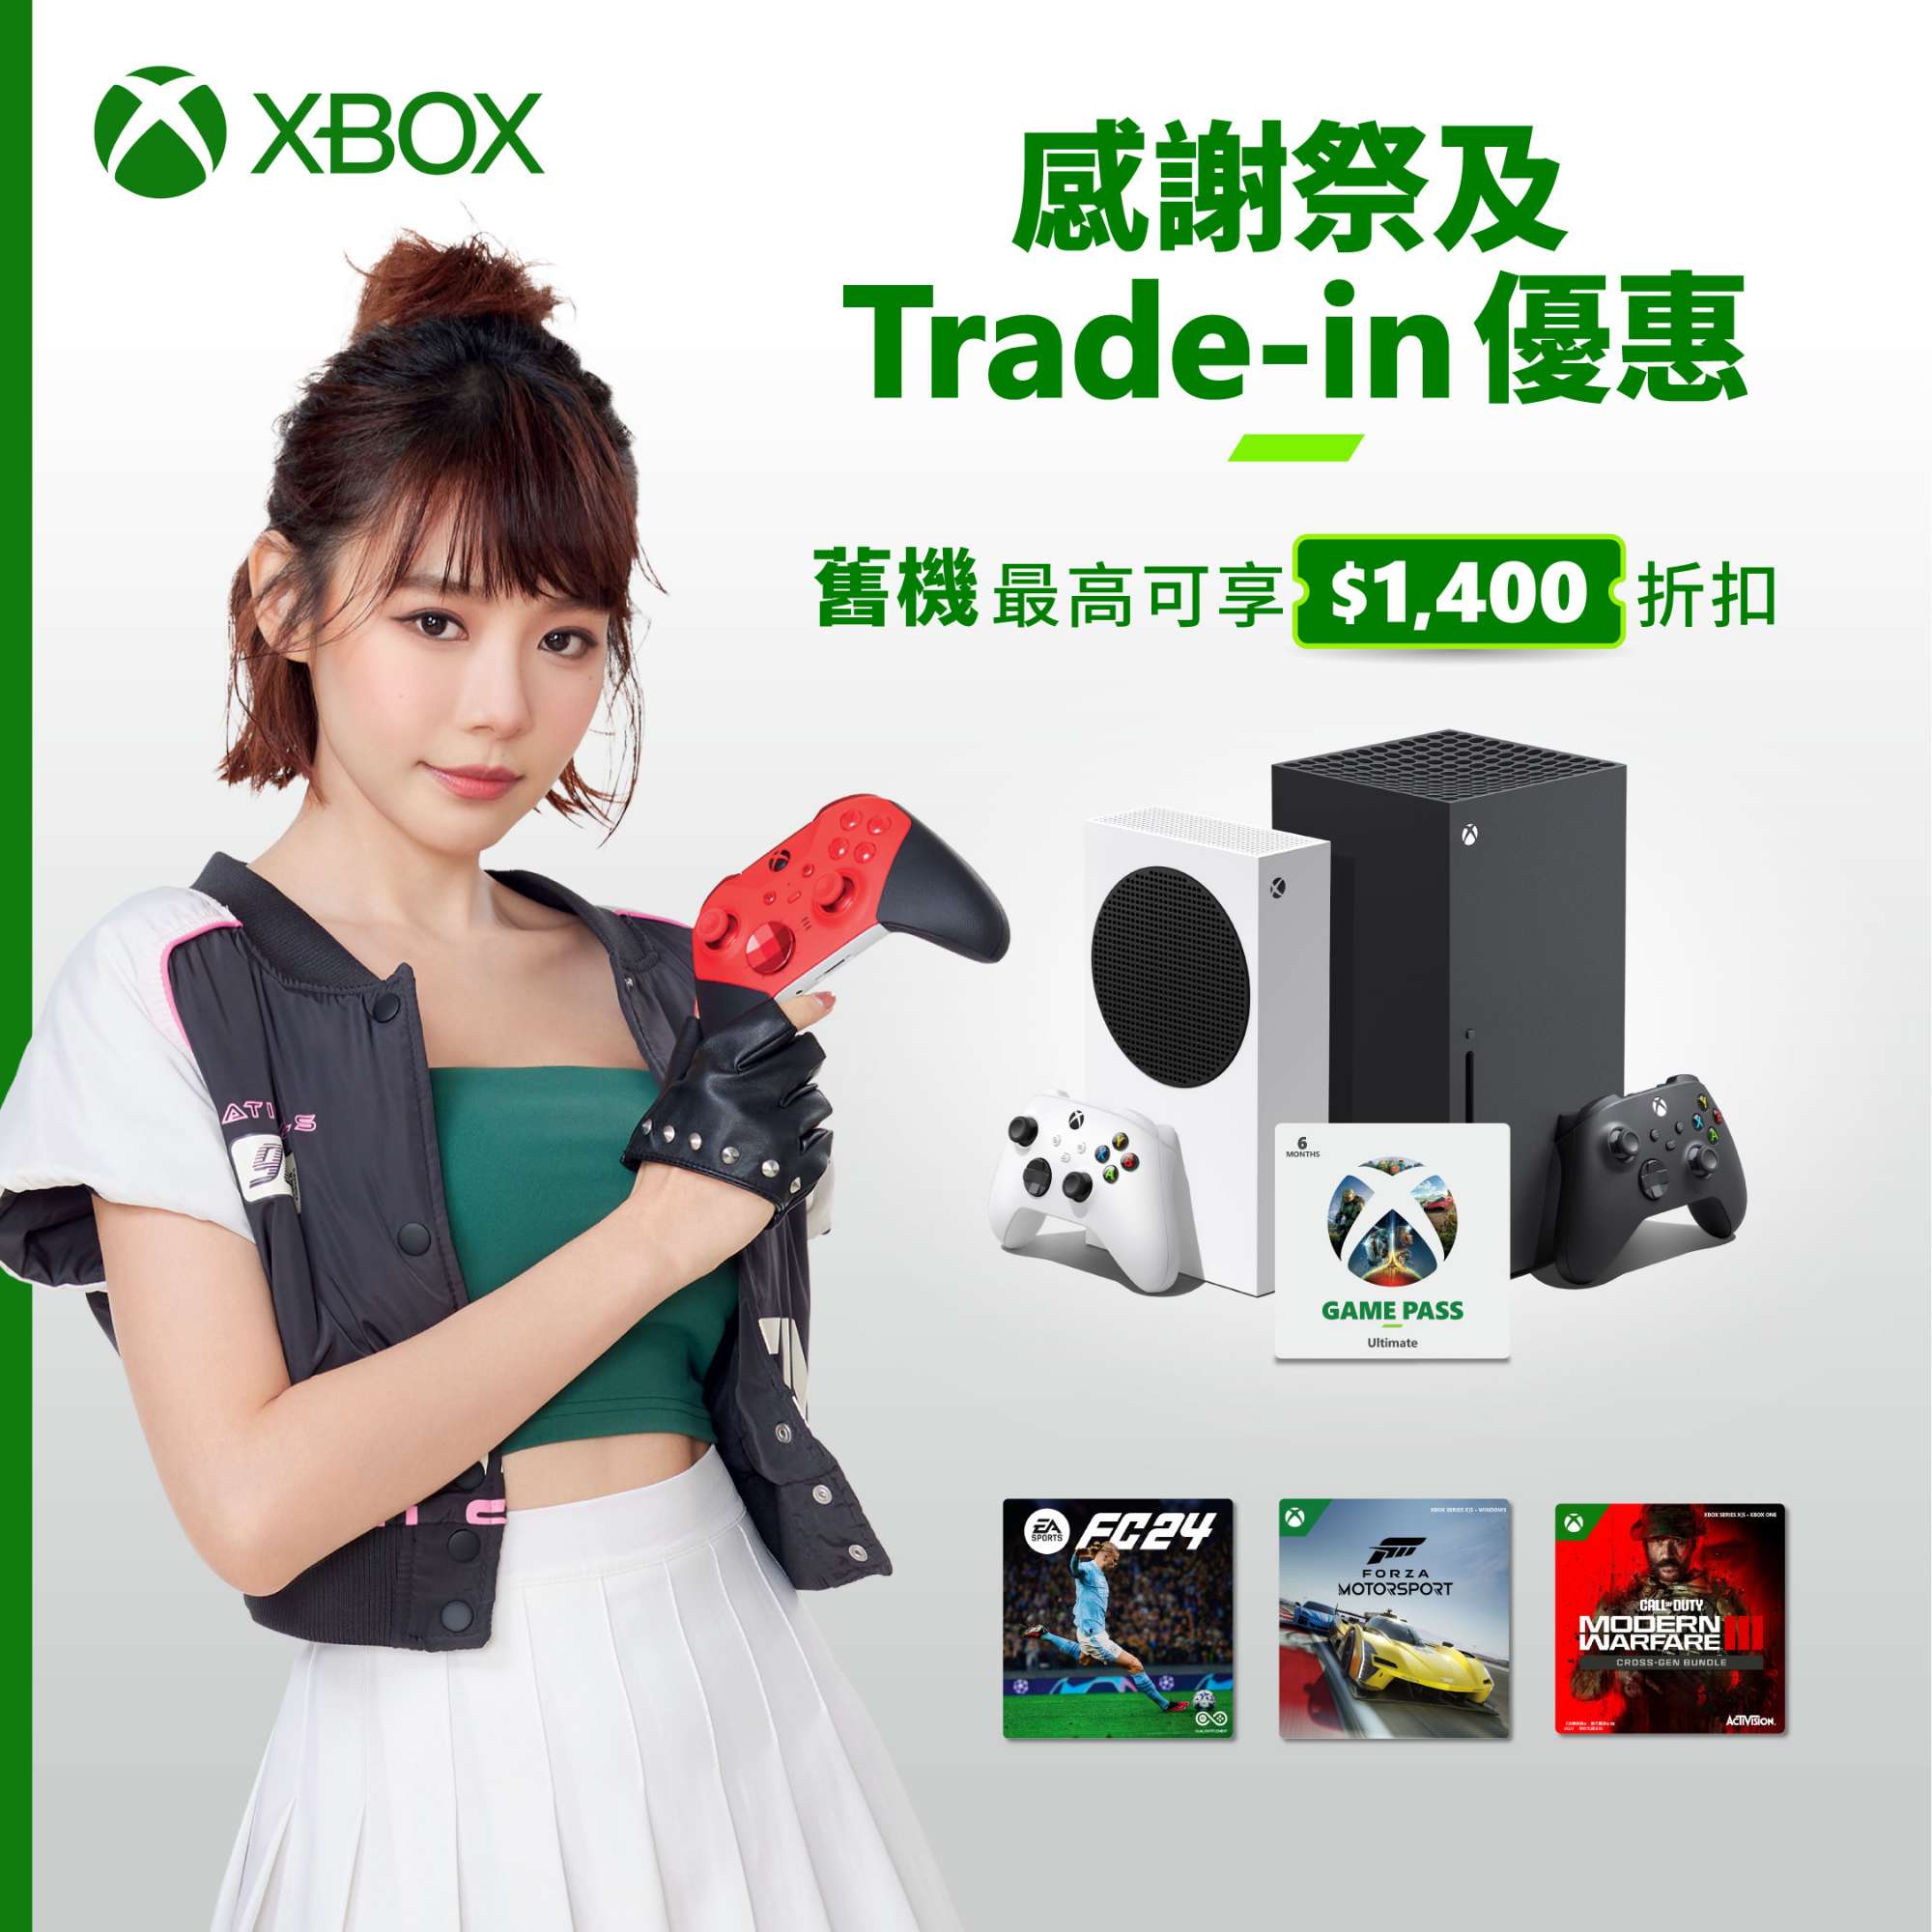 Xbox-11.11-Social_25Oct23_v2.jpg